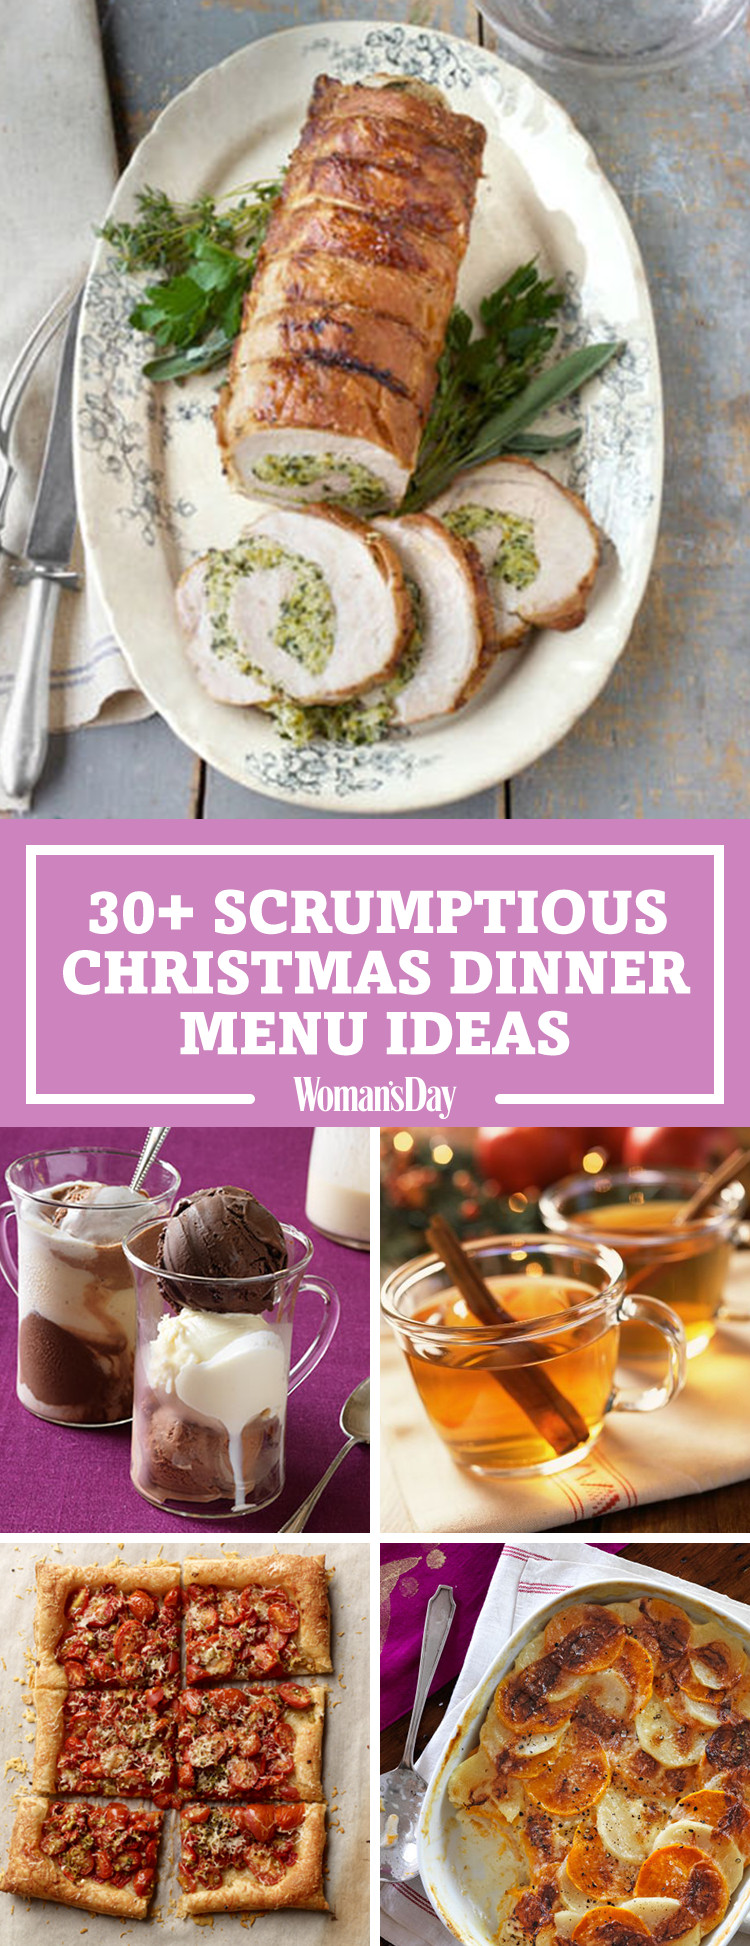 Good Christmas Dinners Ideas
 Best Christmas Dinner Menu Ideas for 2017